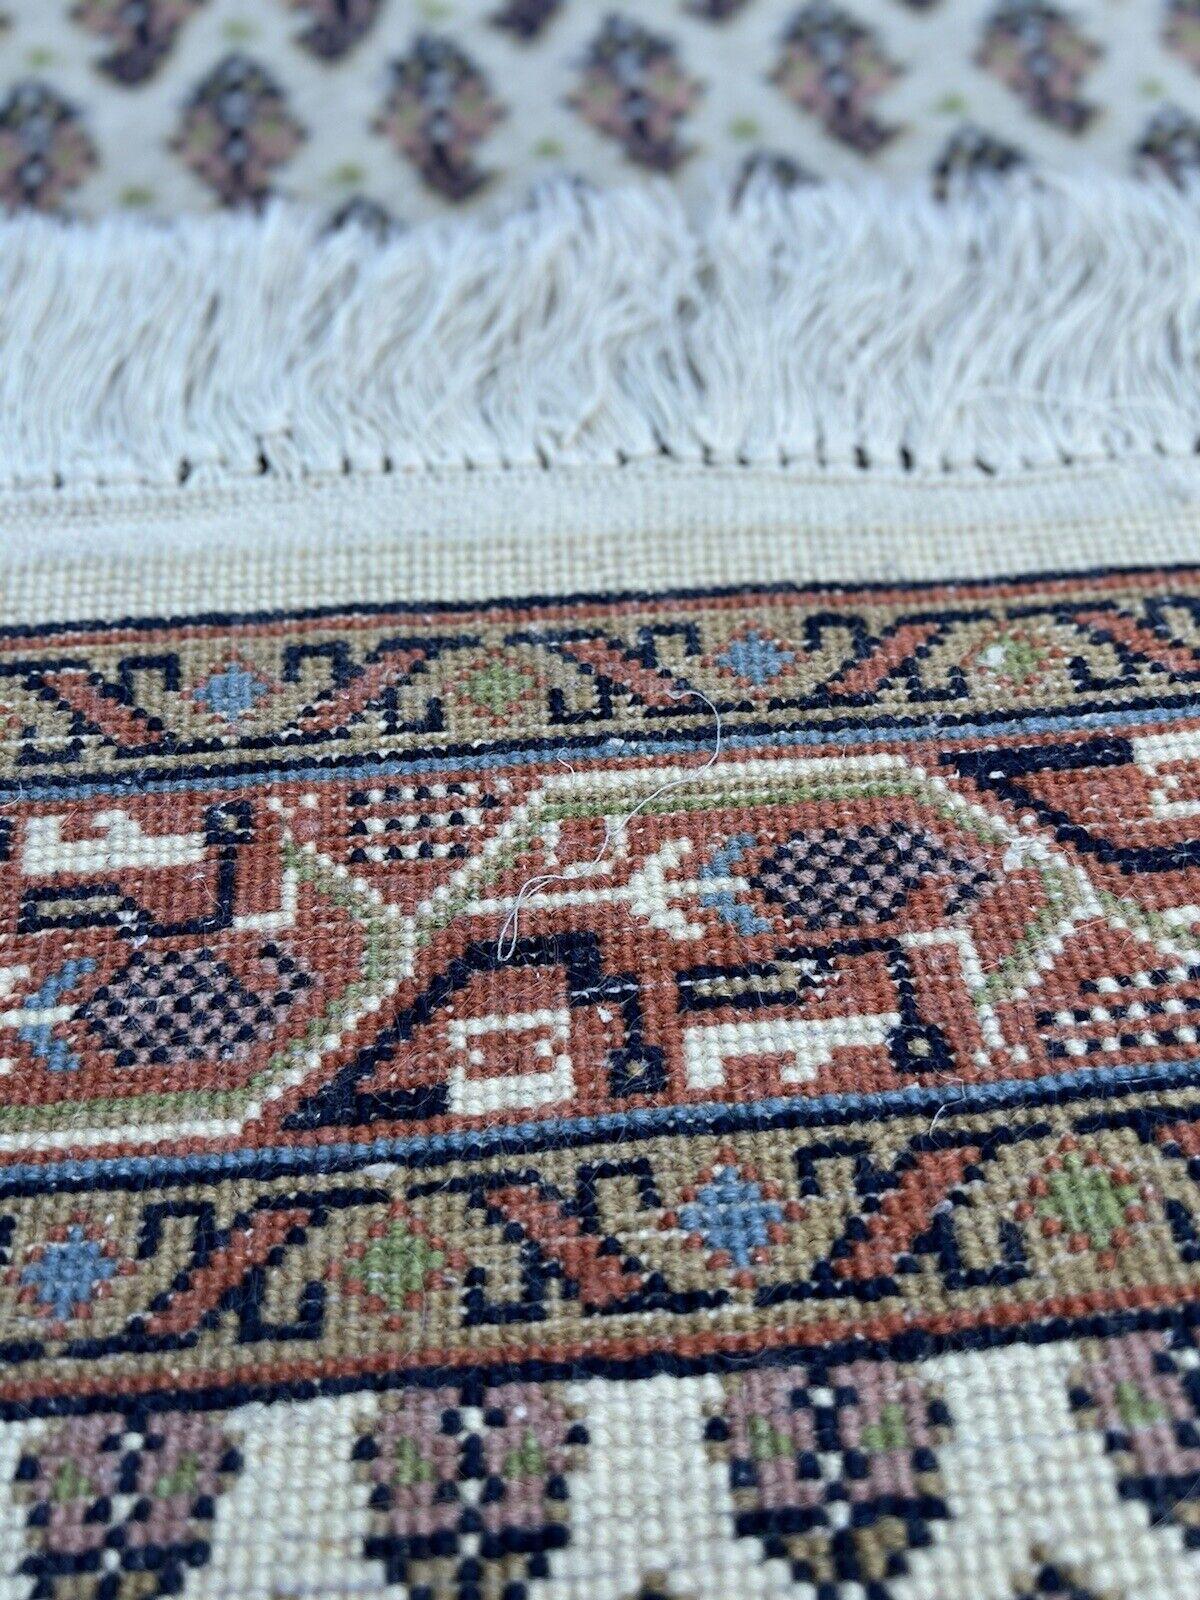 Entdecken Sie den Charme der traditionellen indischen Handwerkskunst mit diesem handgefertigten indischen Seraband-Teppich im Vintage-Stil. Dieser Teppich aus den 1970er Jahren misst 2,3' x 5' (72cm x 155cm) und ist eine reizvolle Ergänzung für